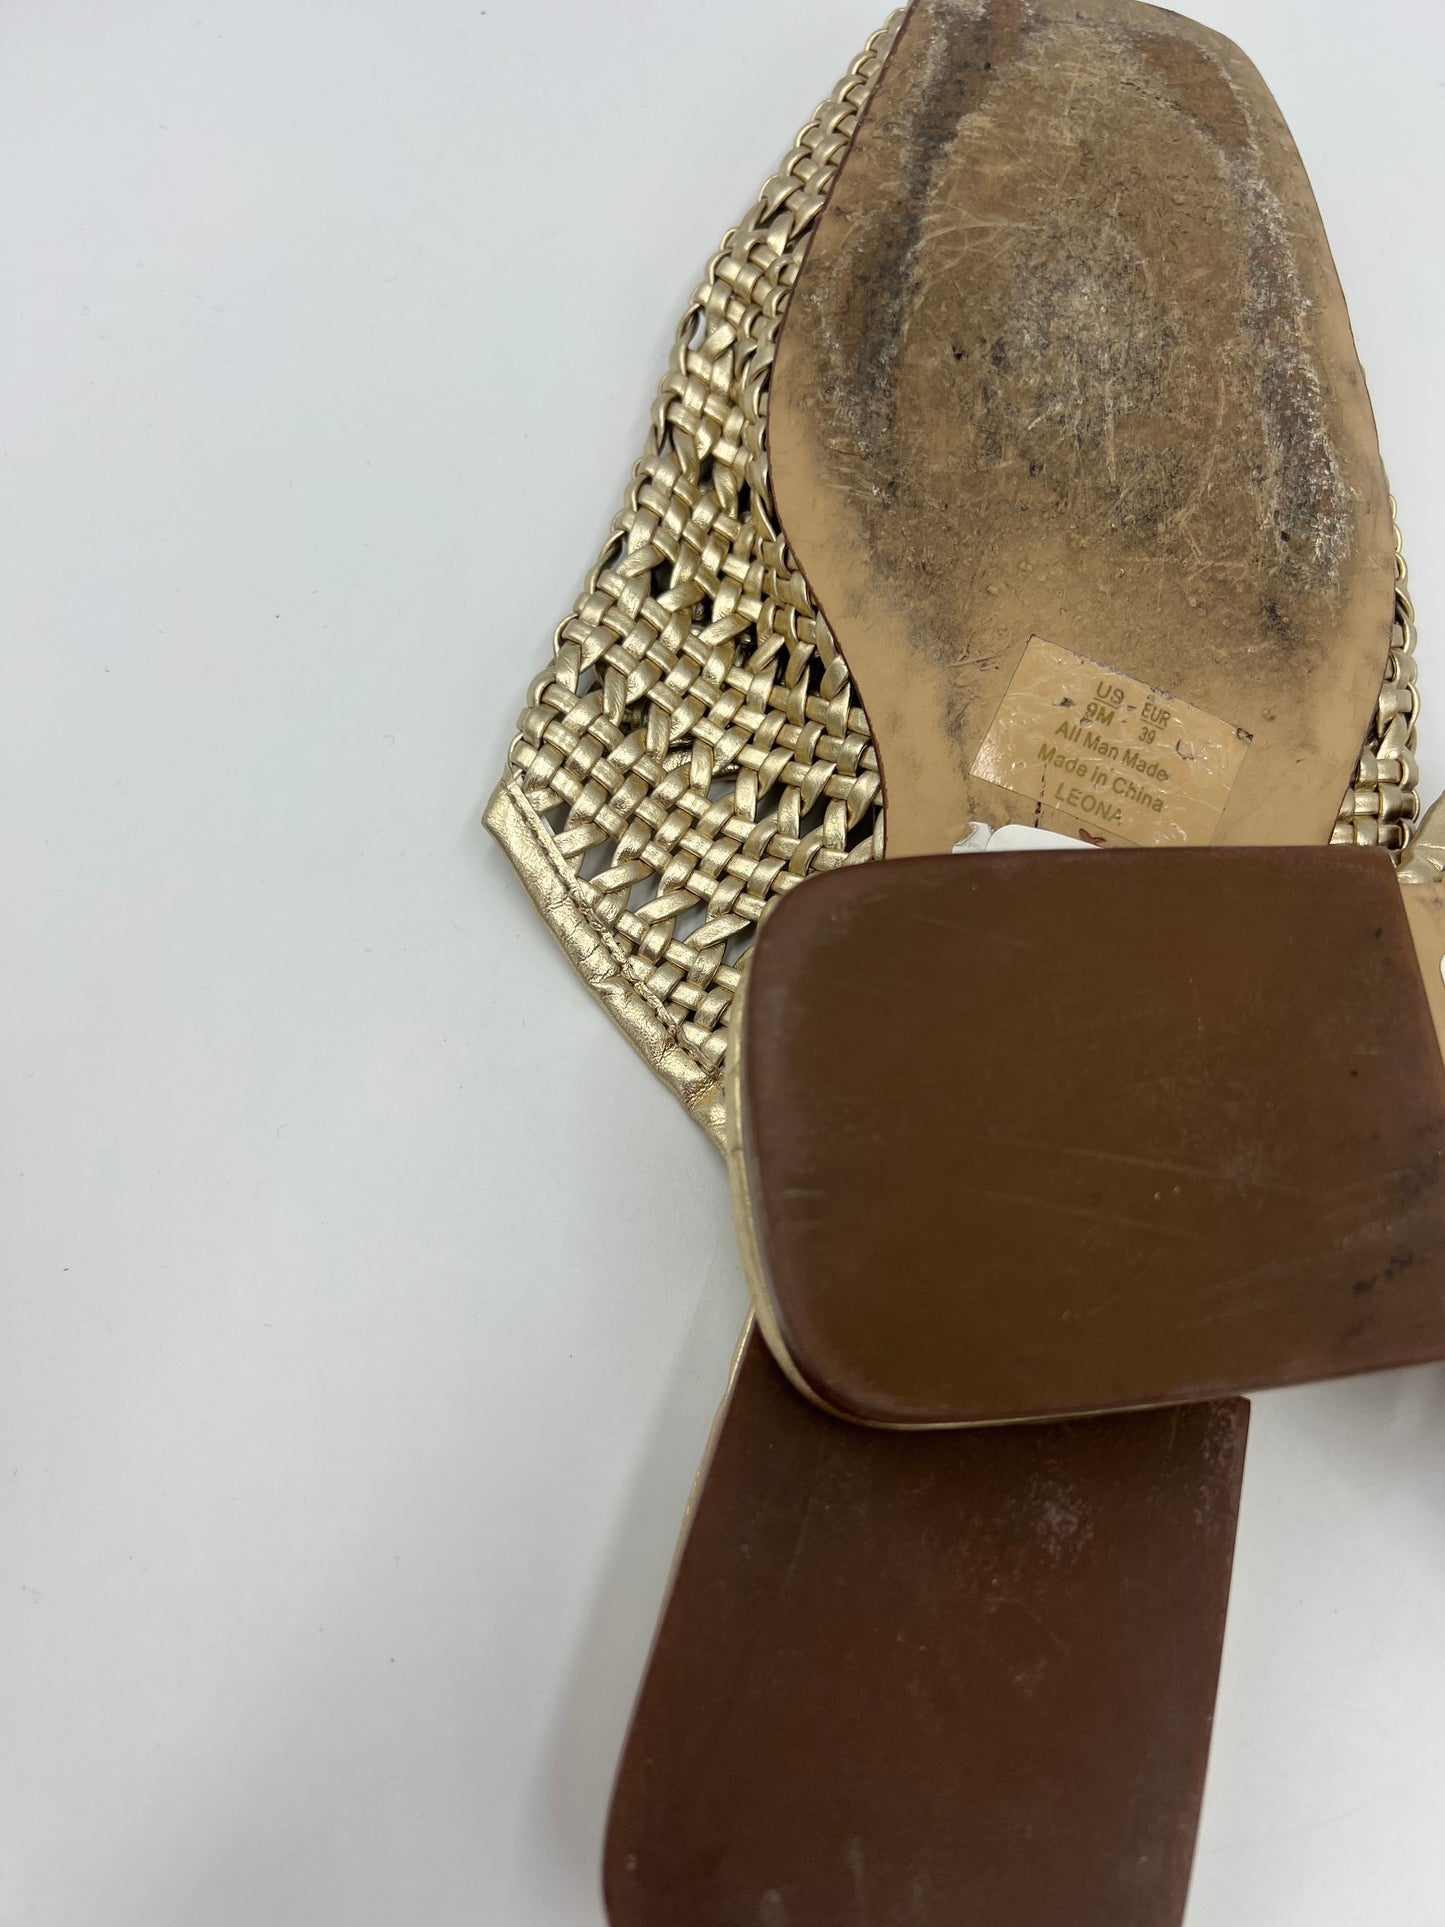 Gold Shoes Flats Mule & Slide Sam Edelman, Size 9